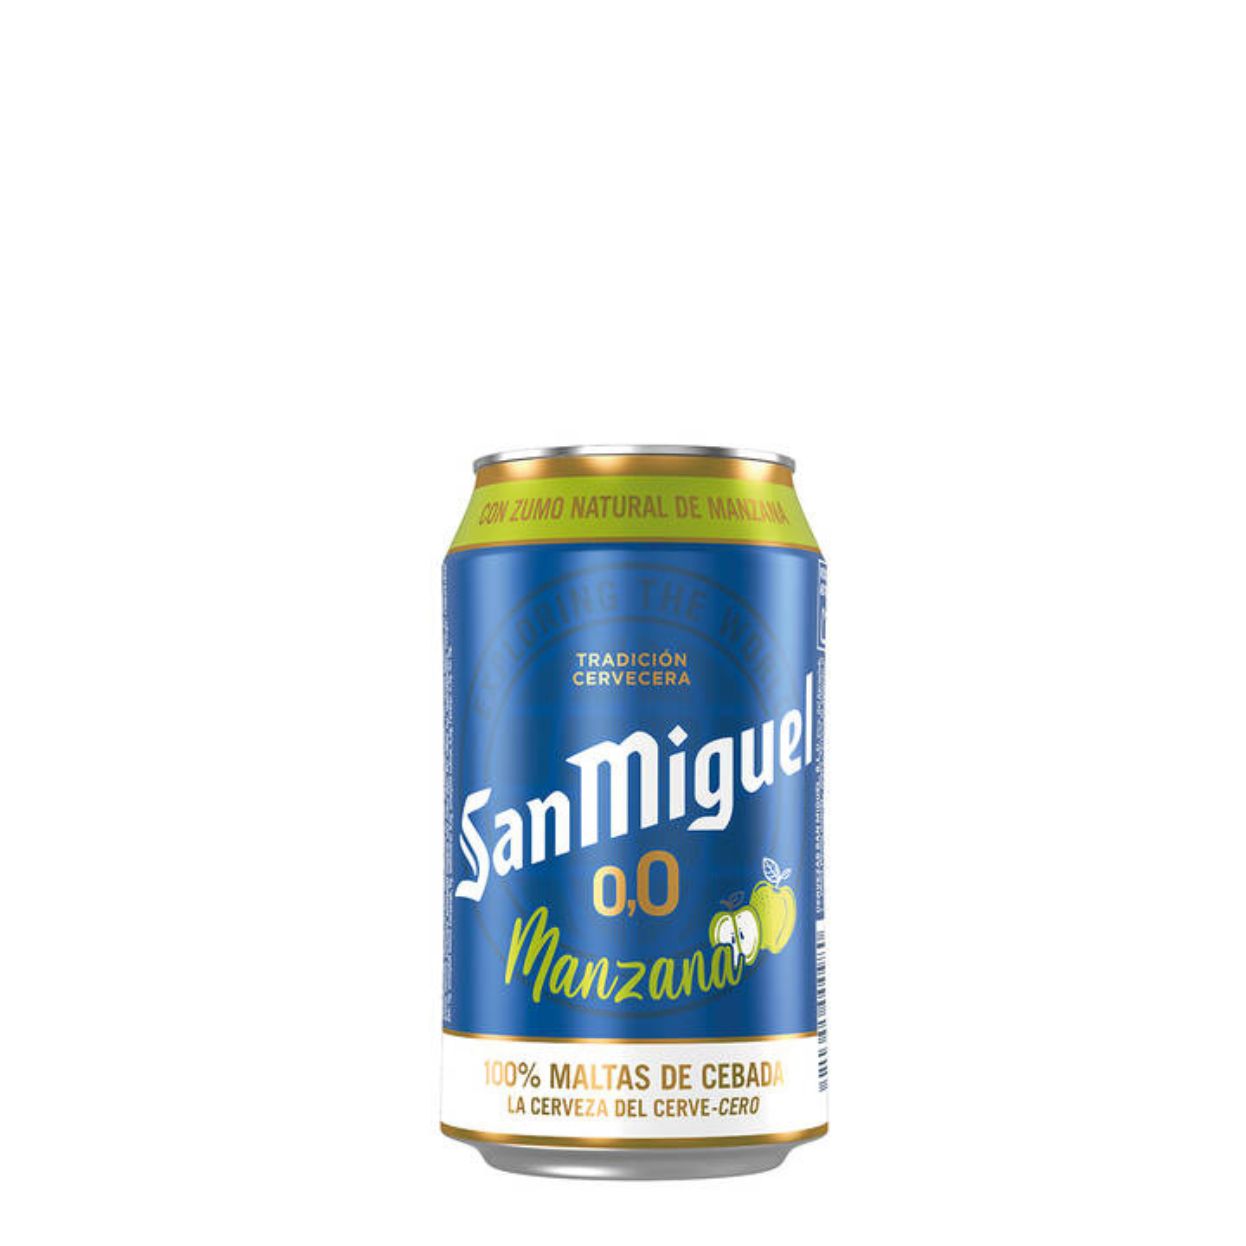 San Miguel 0.0 Manzana